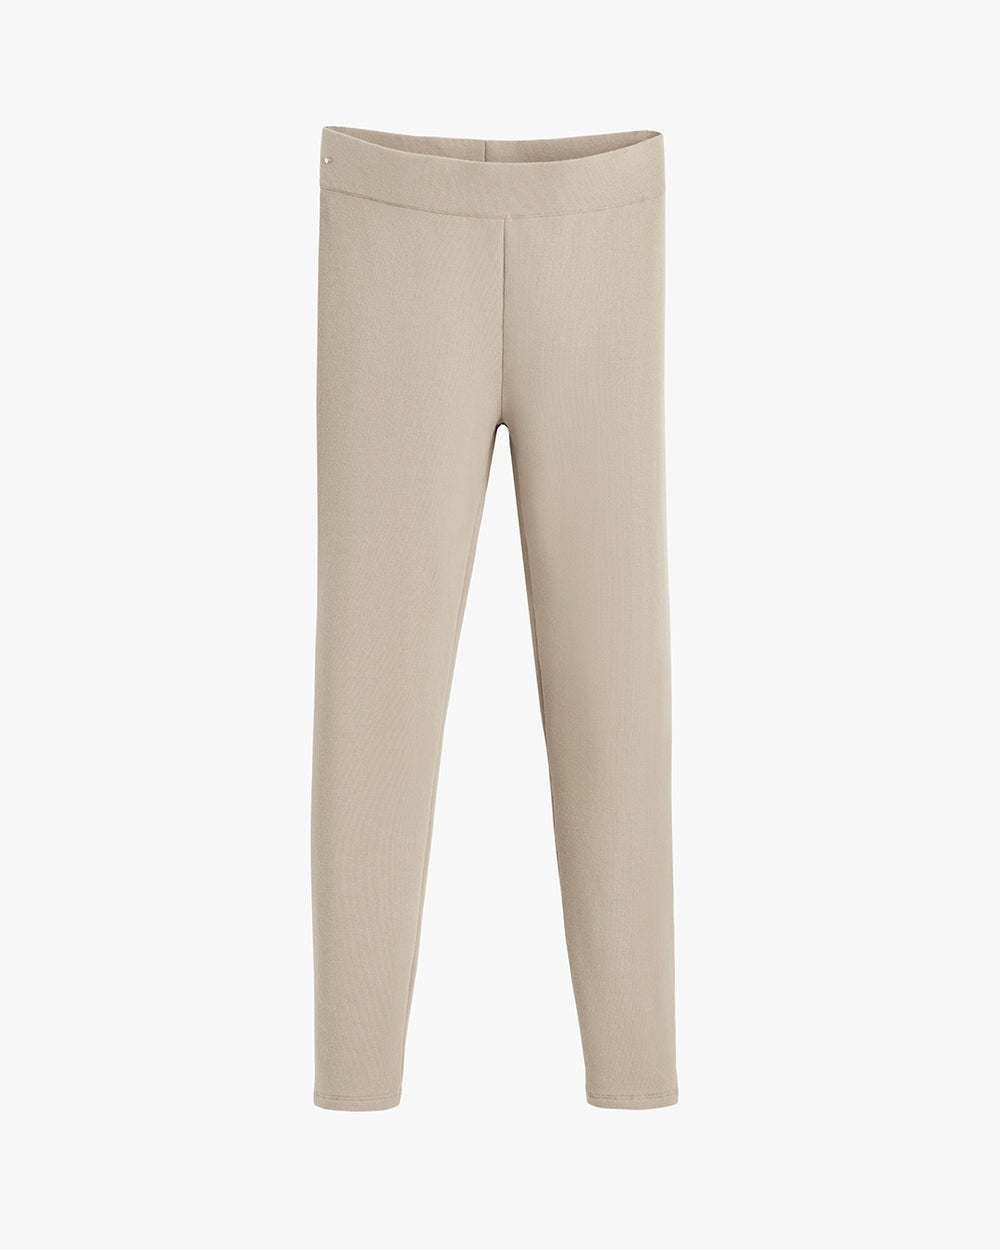 Fleece Lined Leggings (2 colors available) – Shop Denison University